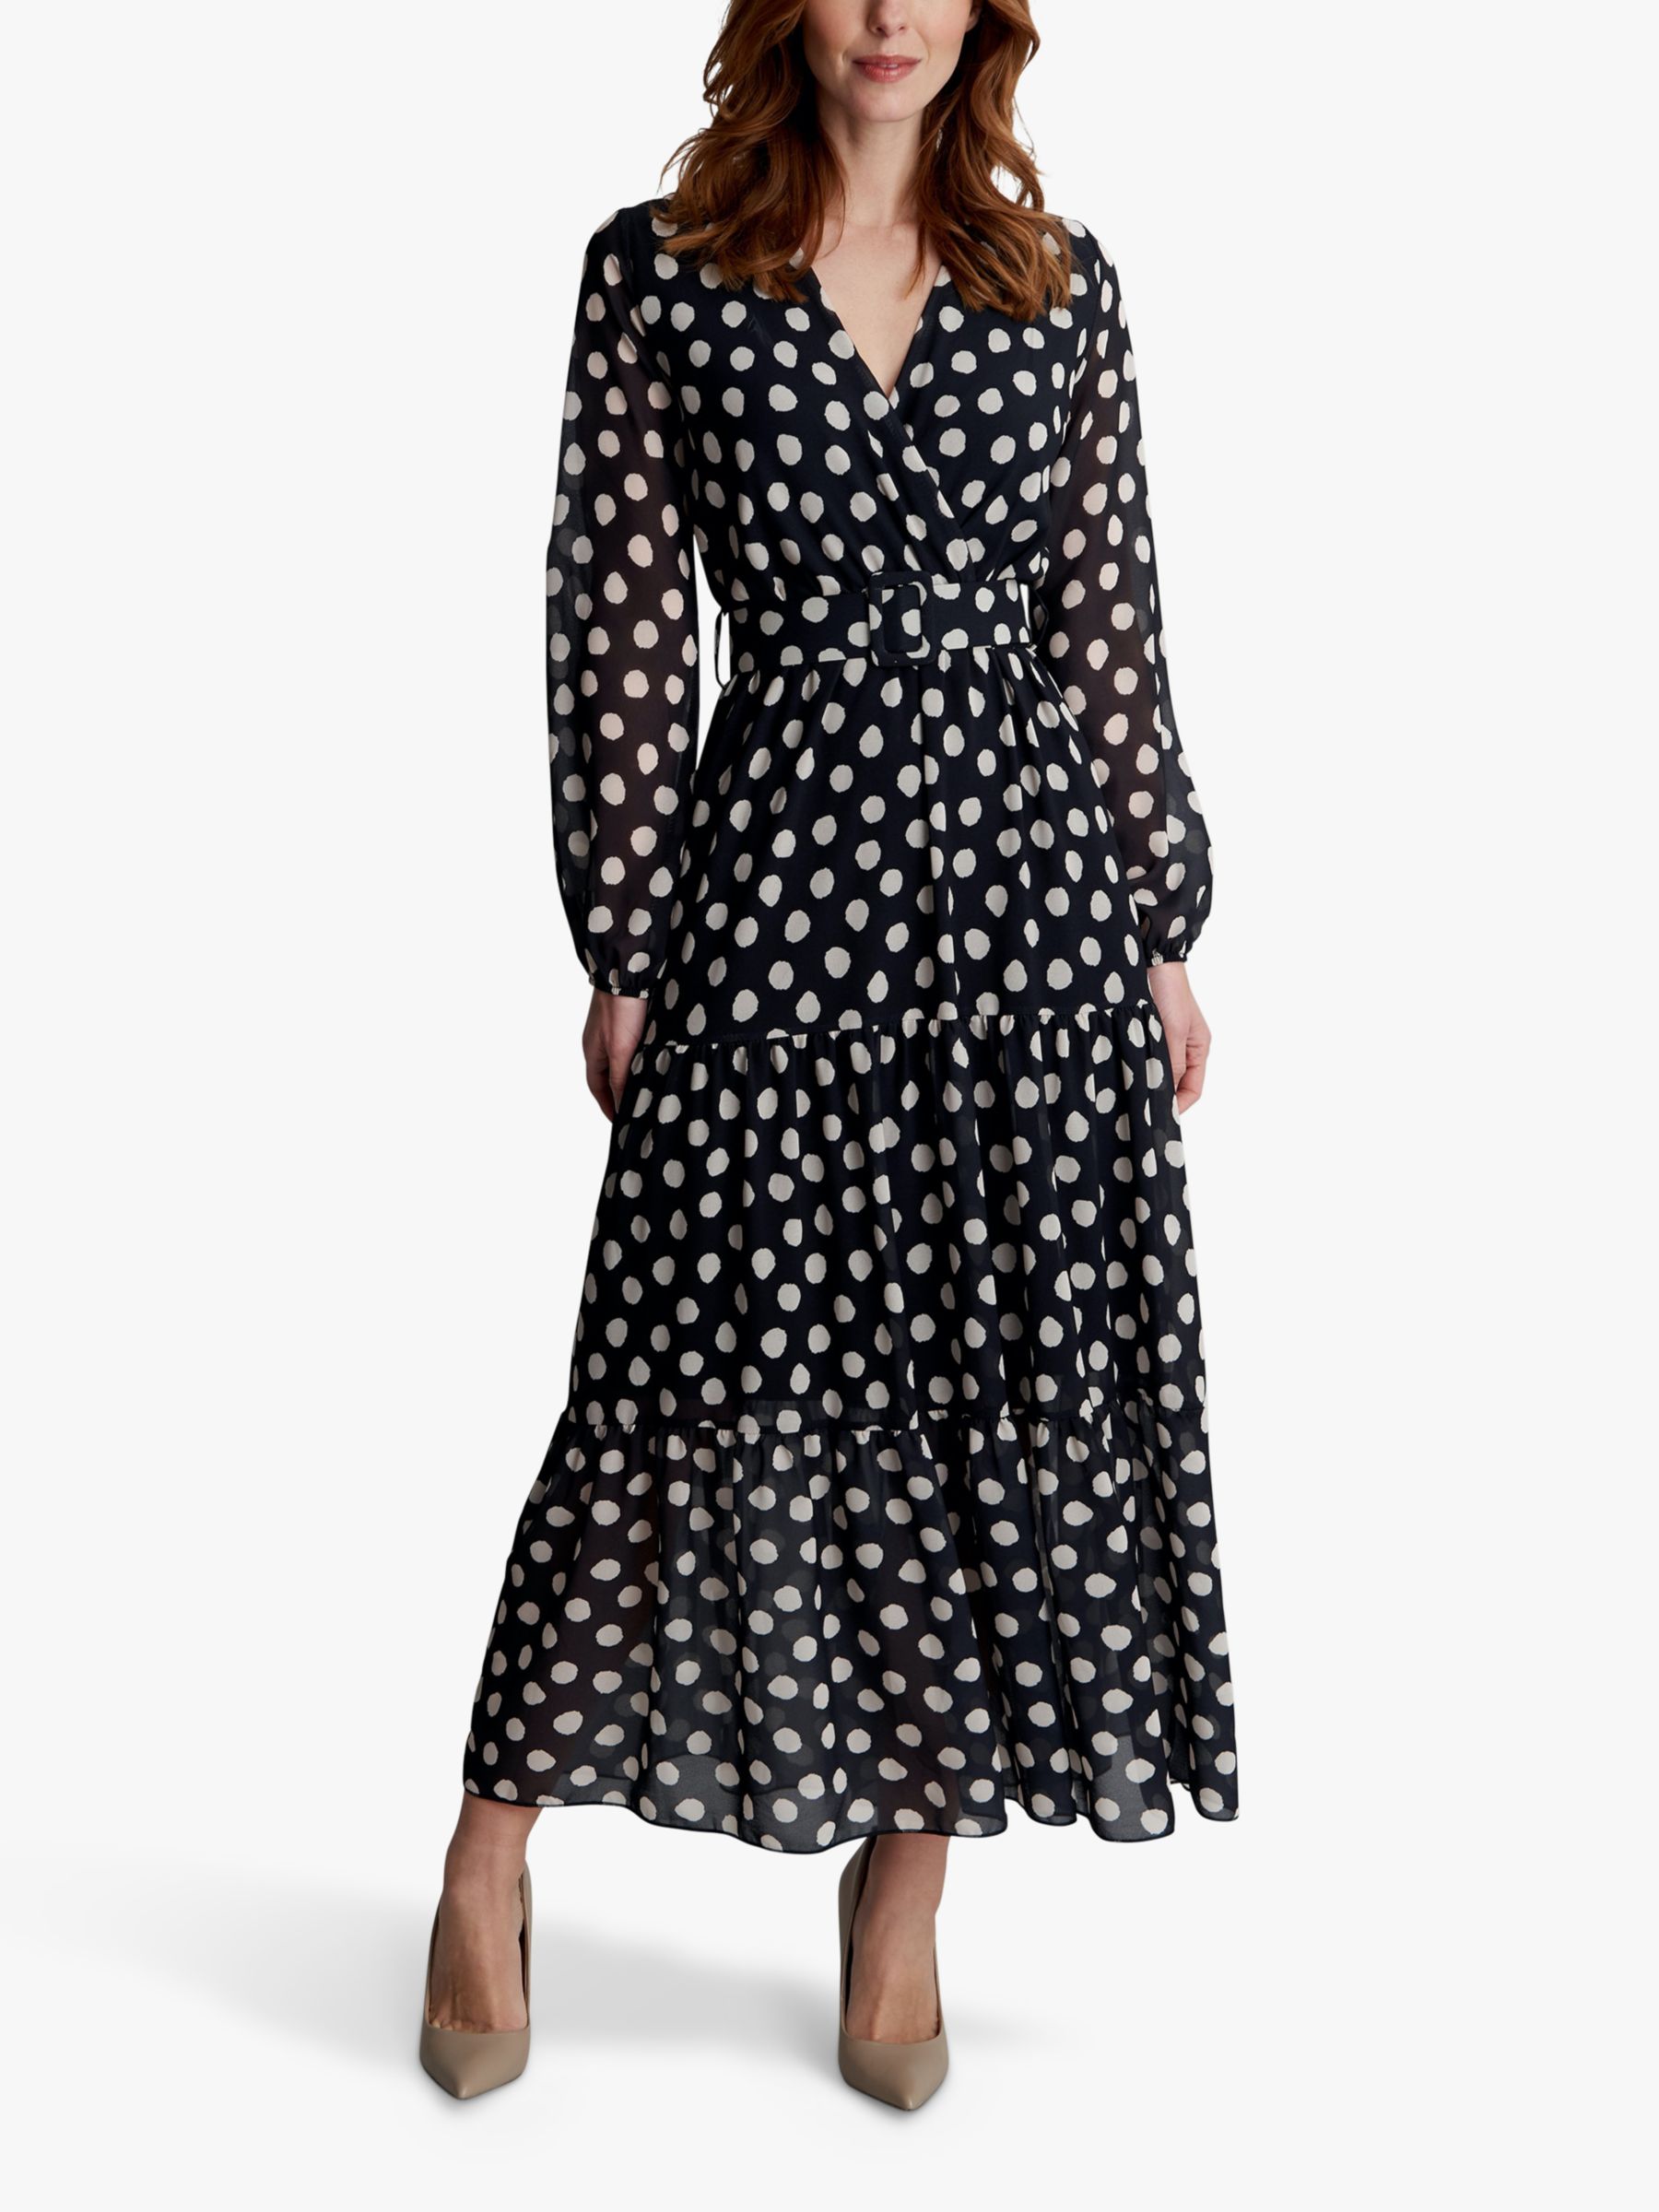 Gina Bacconi Rayla Spot Print Tiered Maxi Dress, Black/White